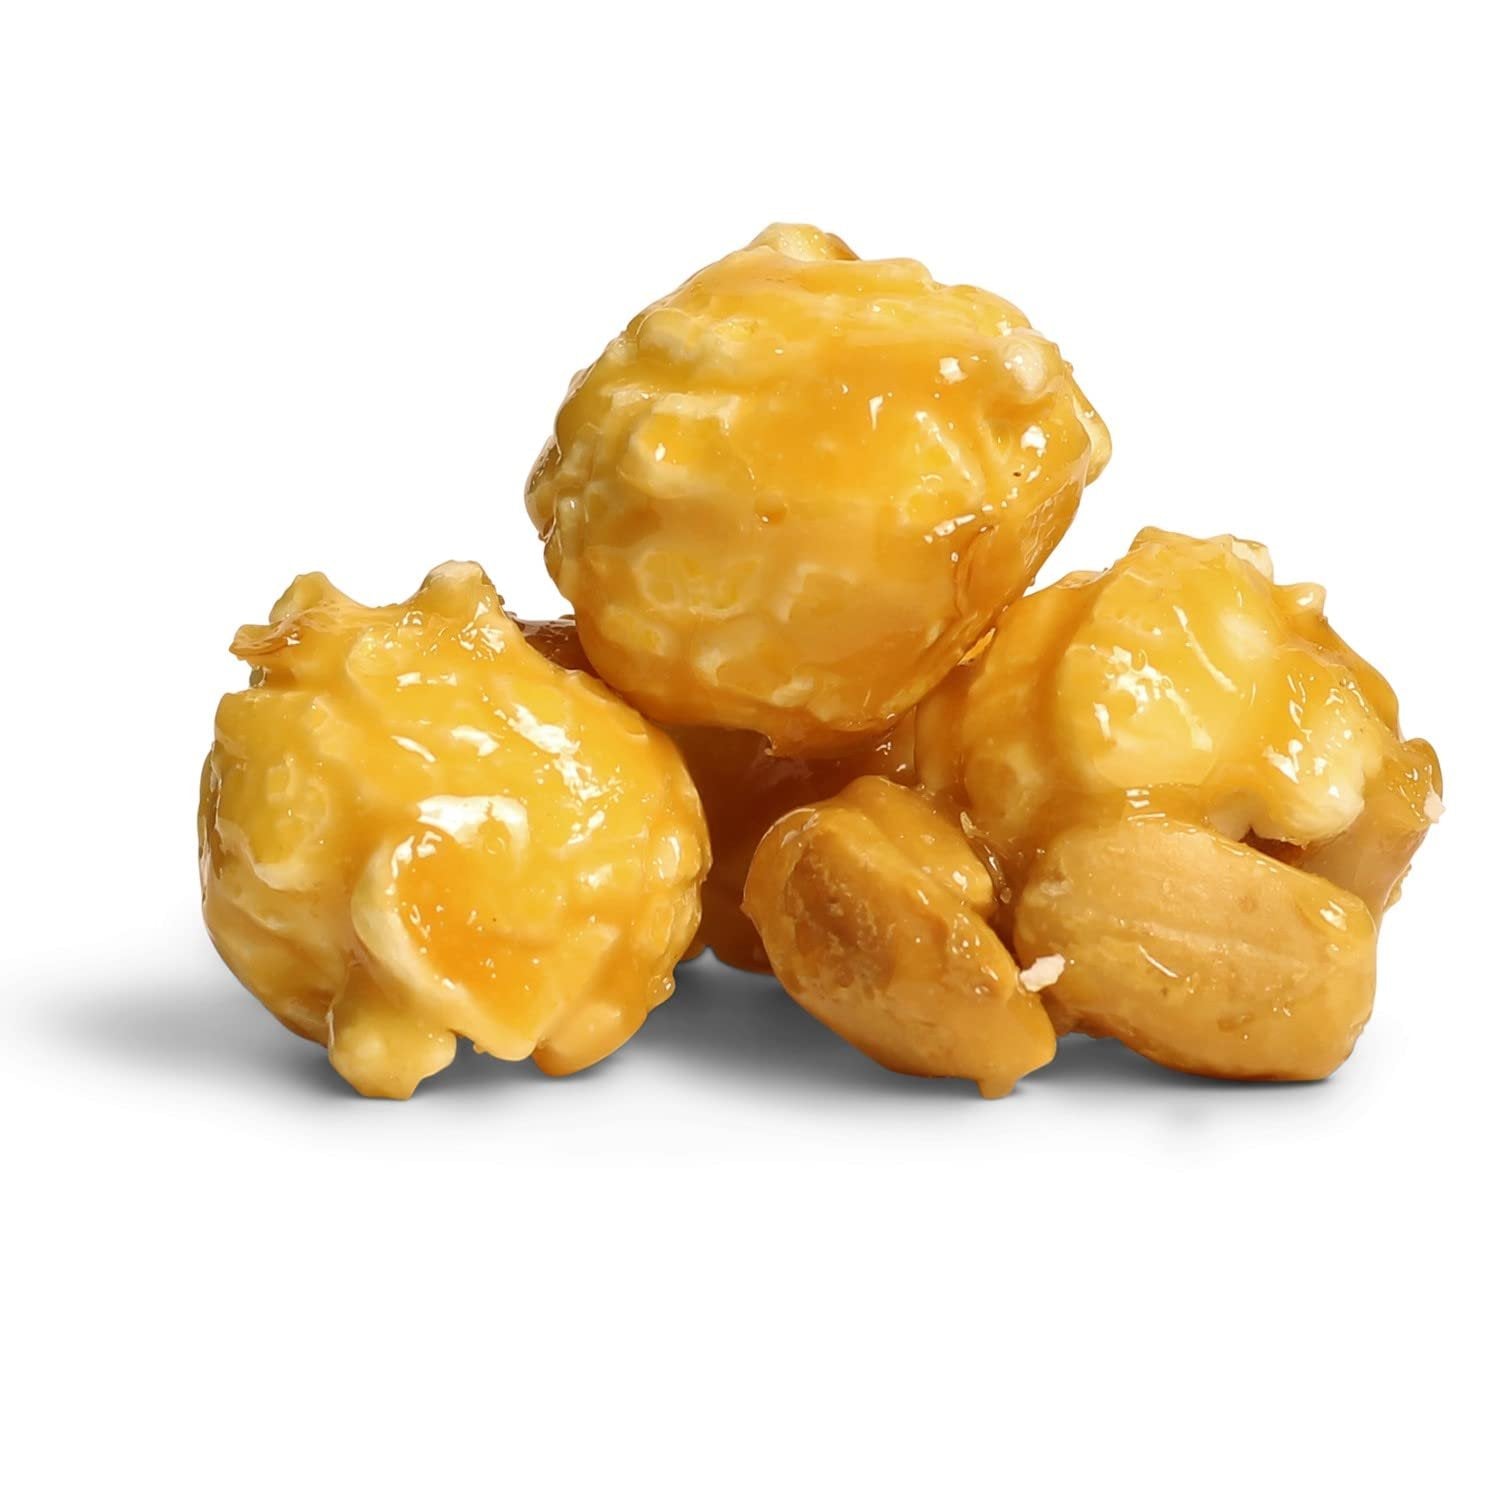 Caramel Nut Popcorn